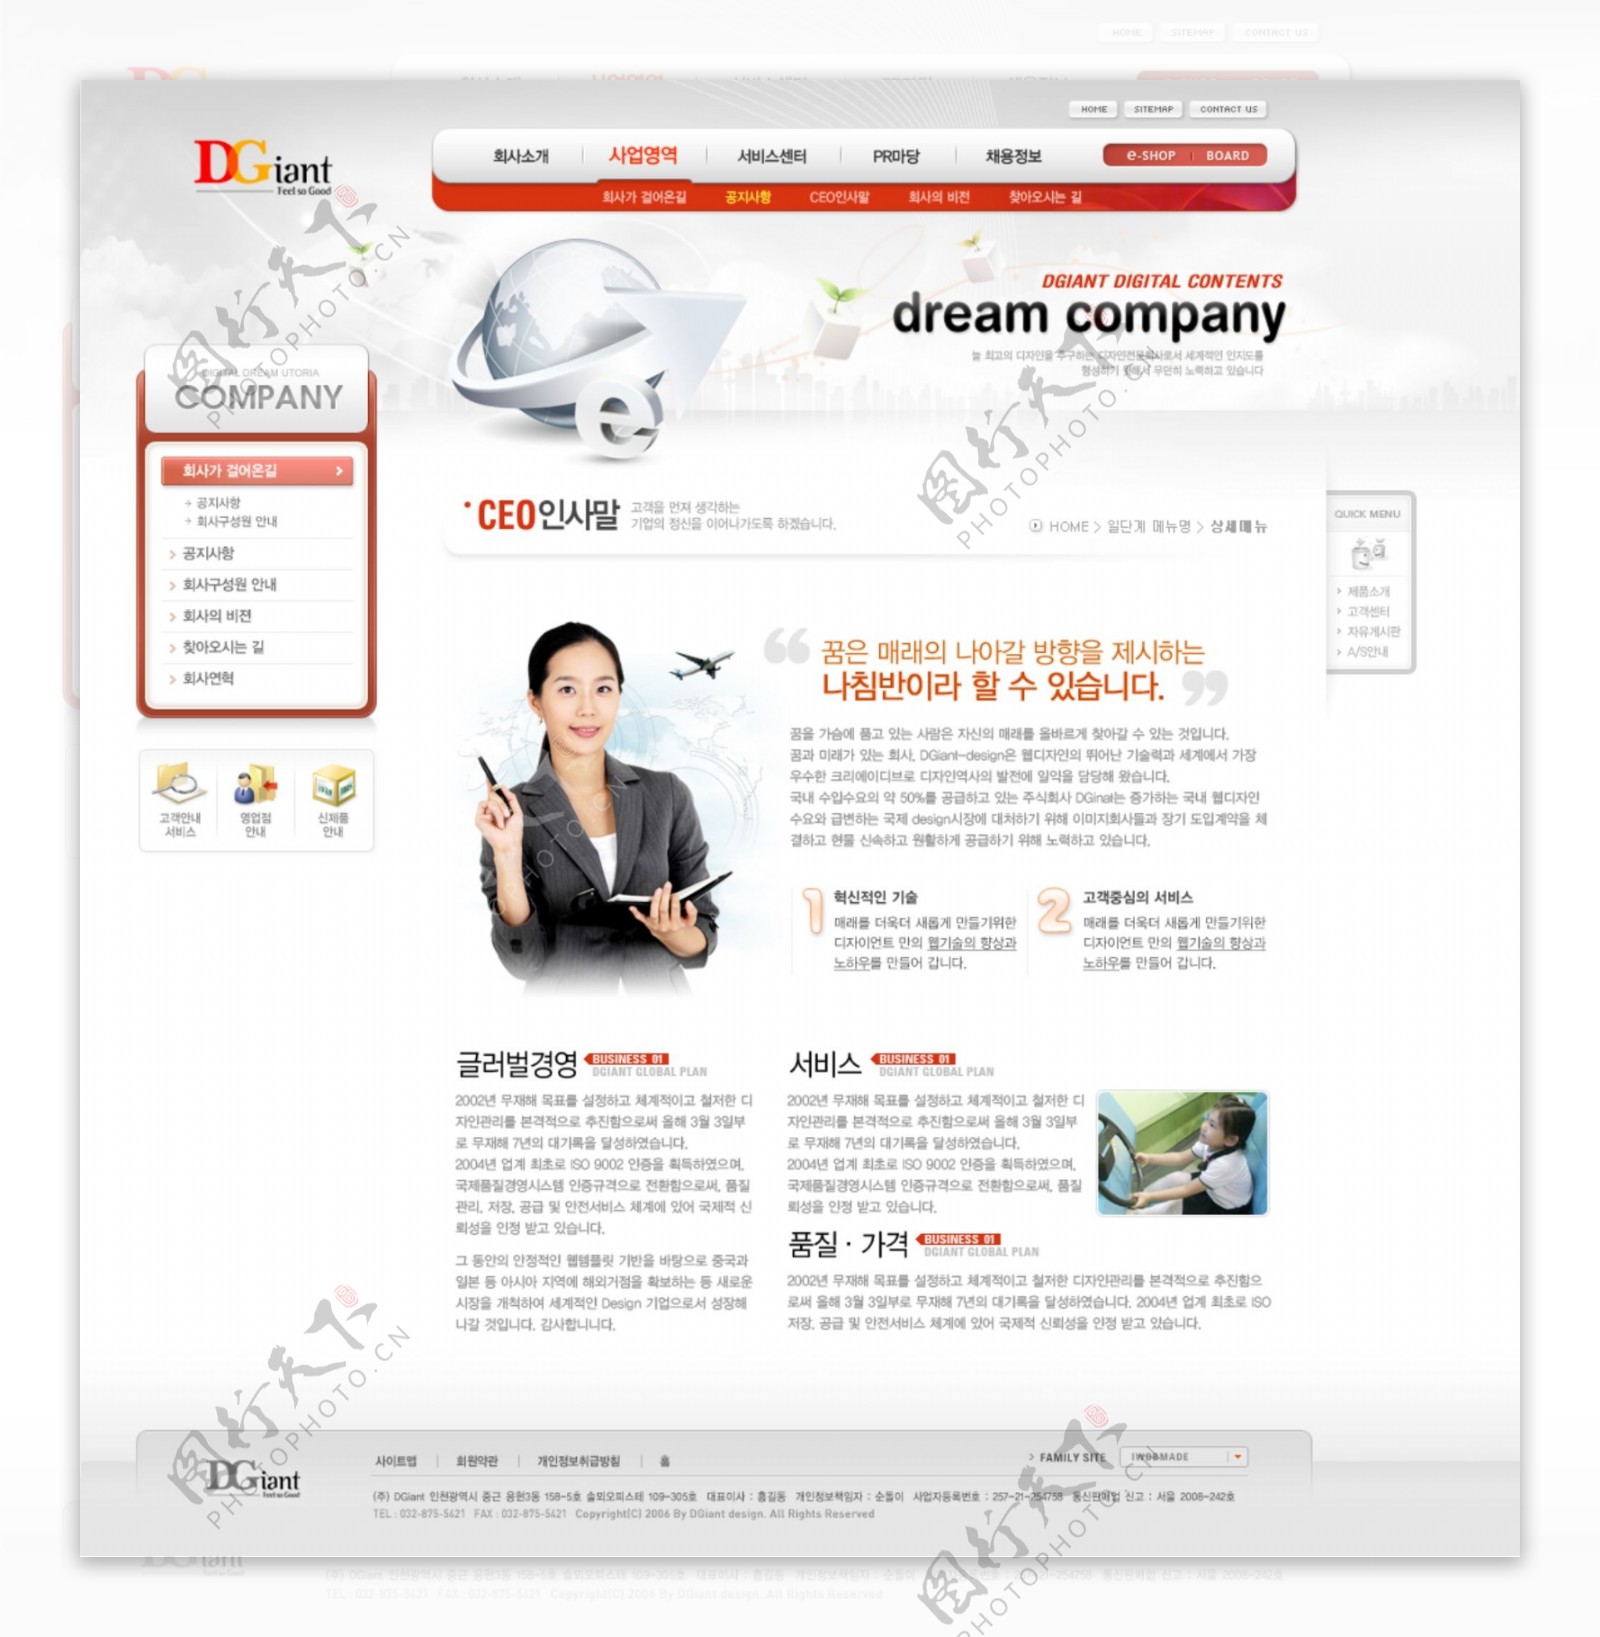 科技企业网站设计